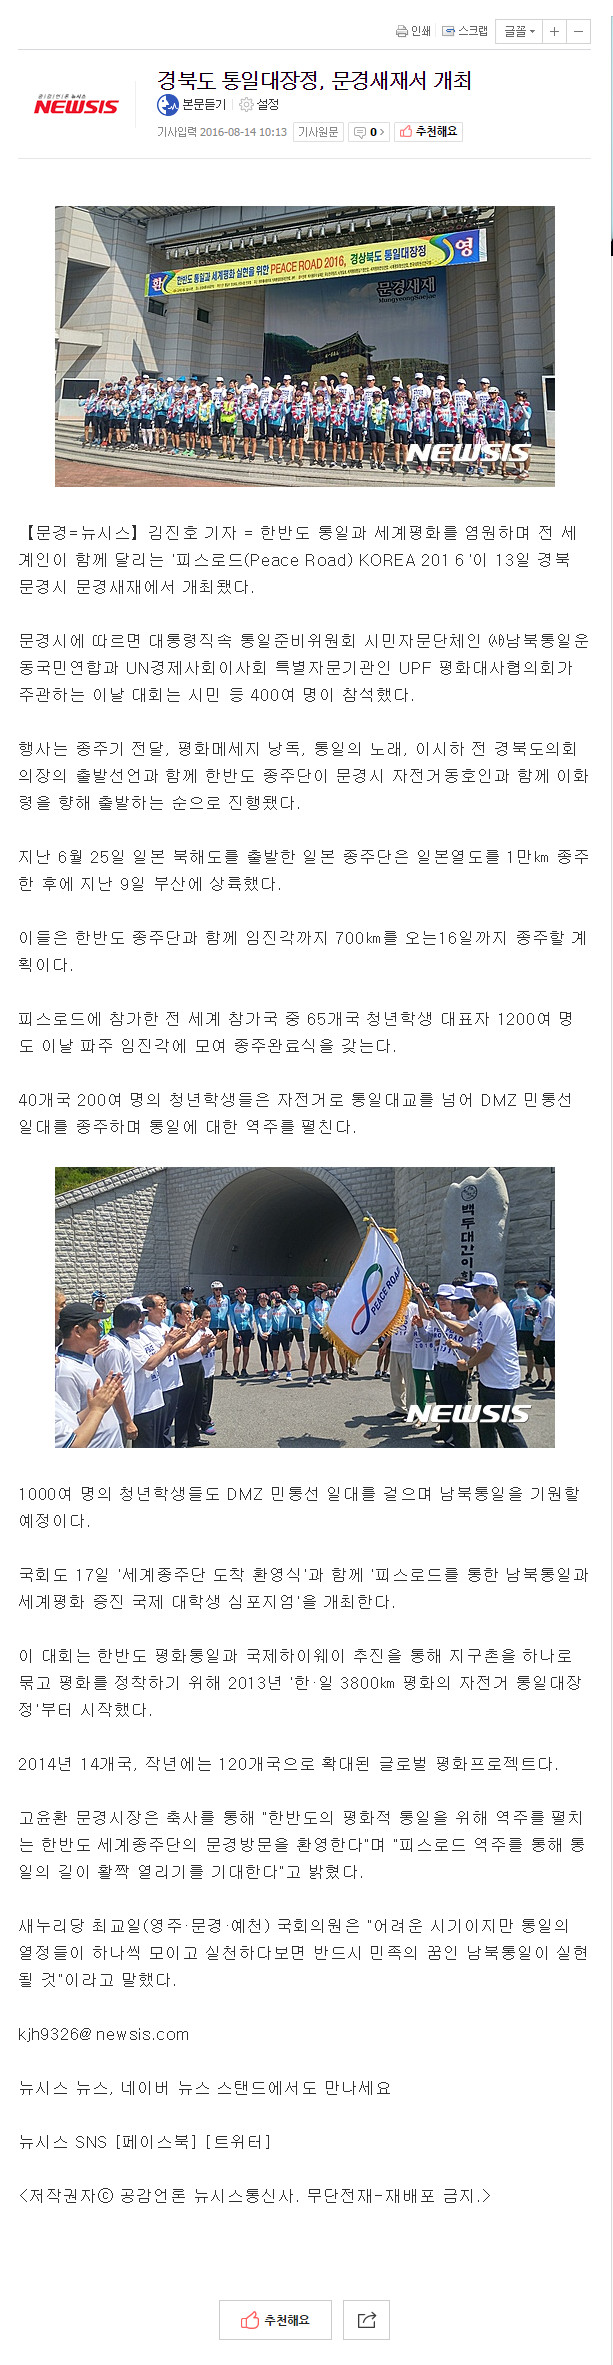 20160814 [뉴시스] 경북도 통일대장정, 문경새재서 개최.jpg